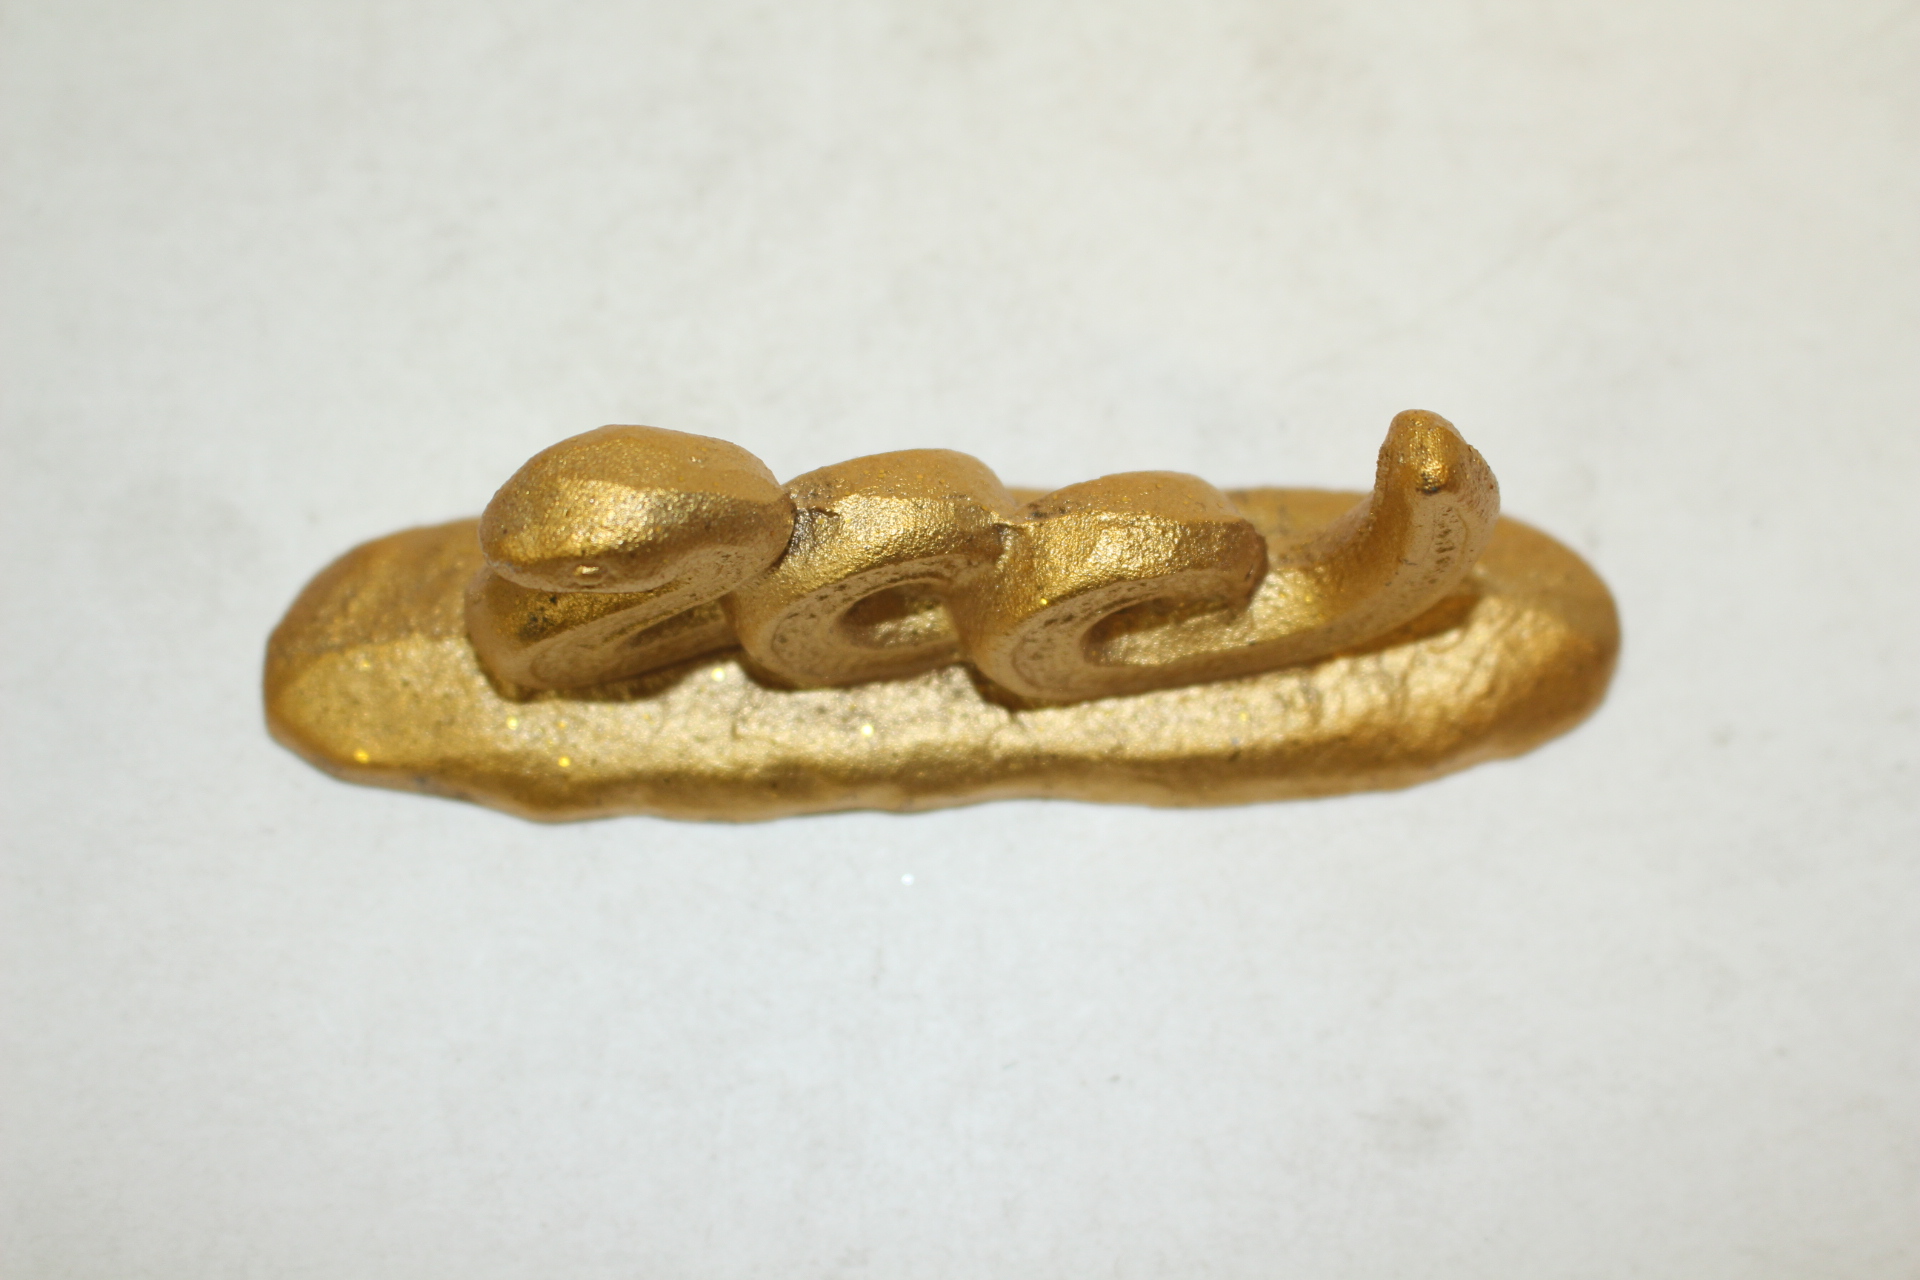 묵직한 무쇠에 금채된 뱀모양 문진